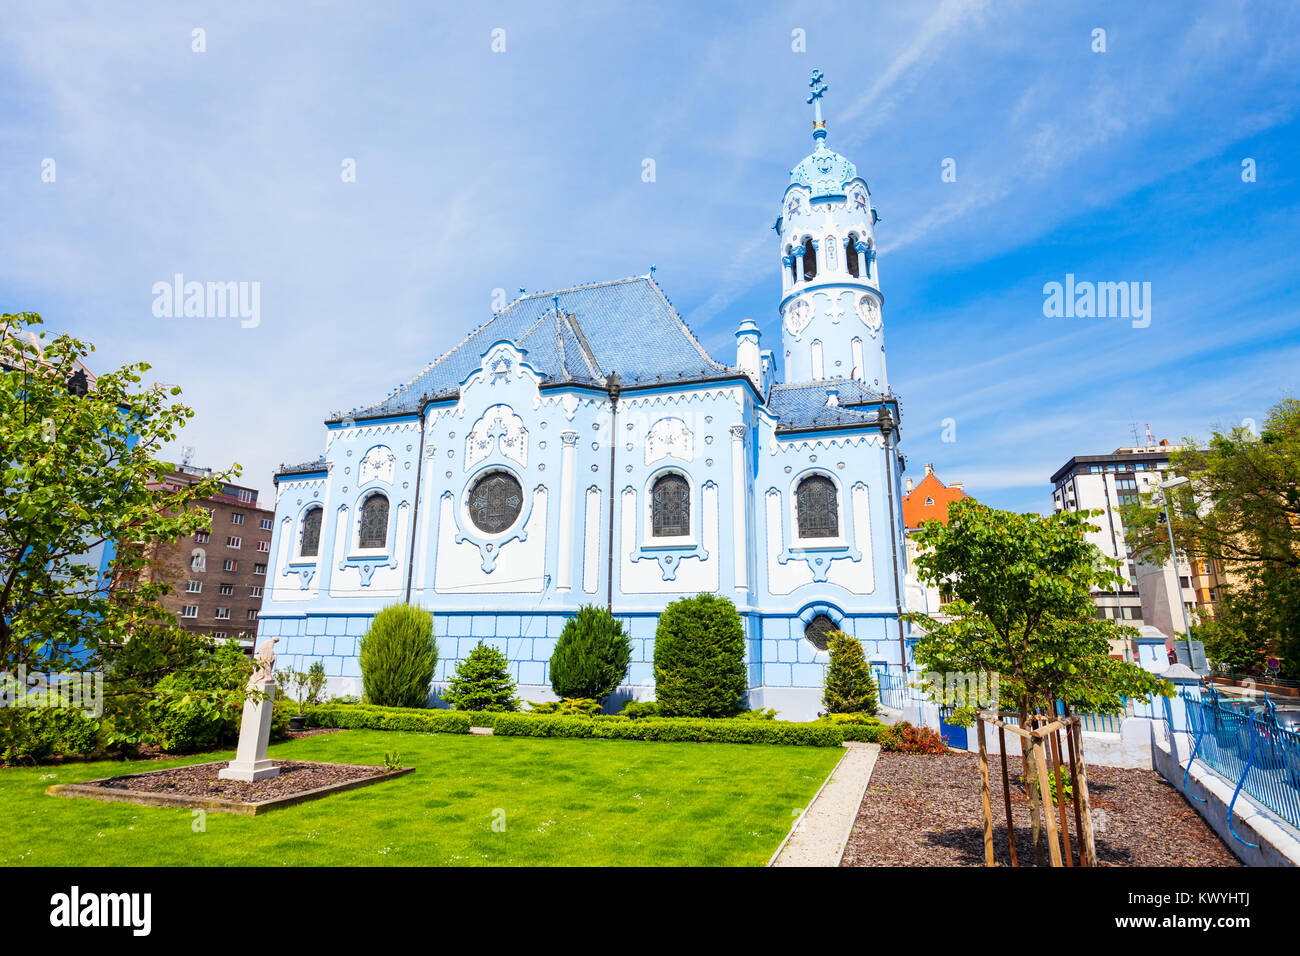 La Chiesa blu o la chiesa di Santa Elisabetta o Modry Kostol Svatej Alzbety nella Città Vecchia di Bratislava, Slovacchia. Chiesa blu è un Sece ungherese Foto Stock